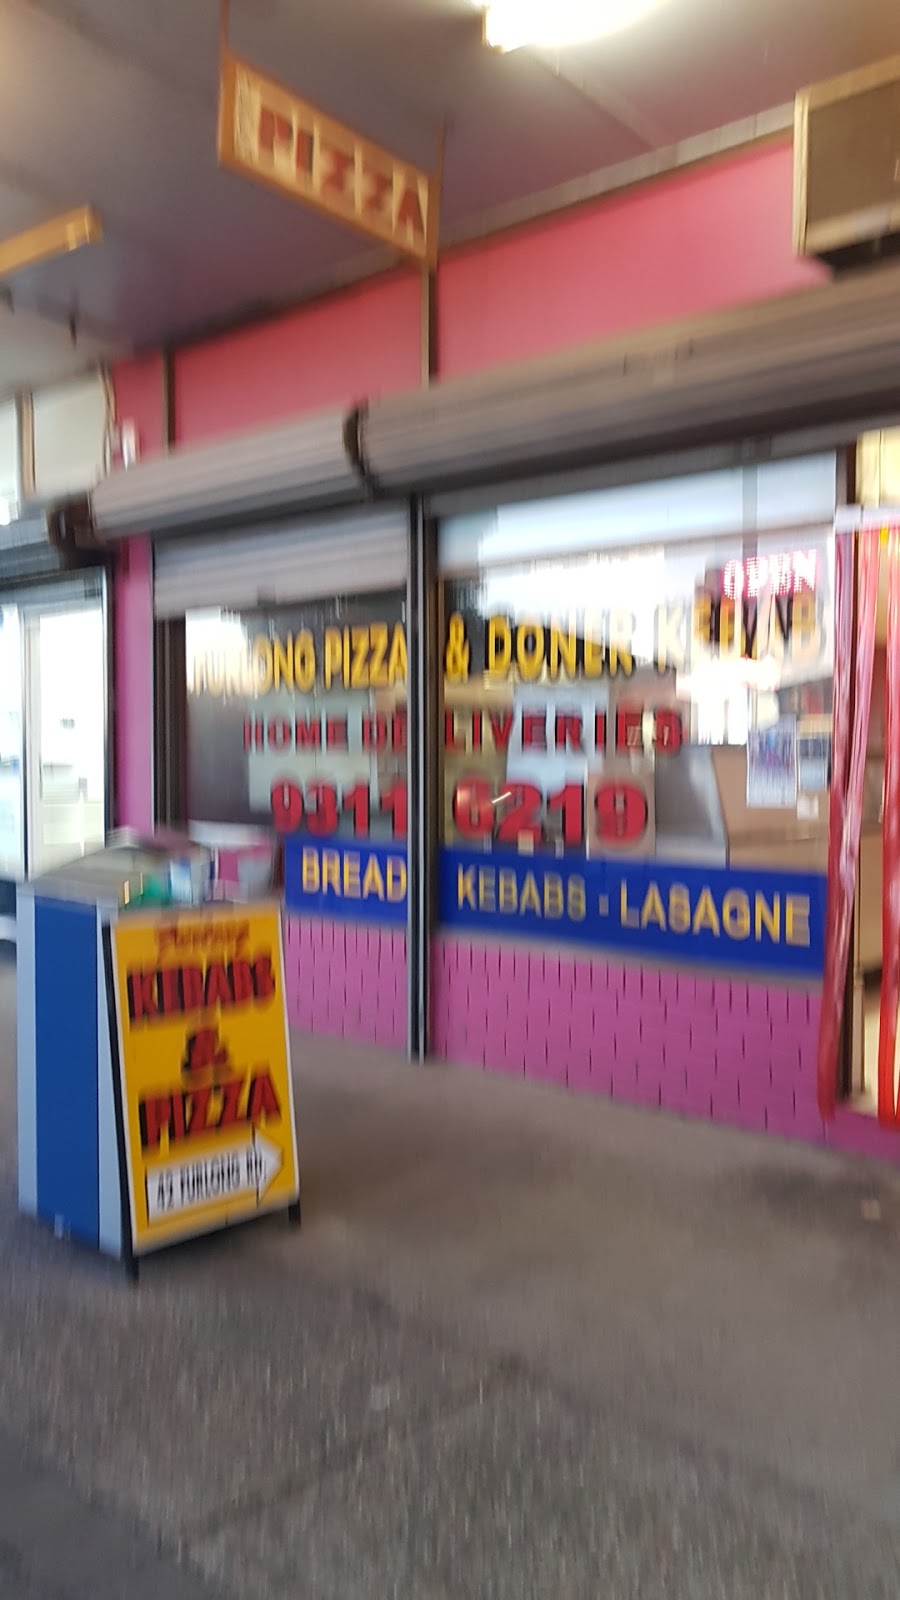 Furlong Pizza & Doner Kebab sunshine north | meal delivery | 42 Furlong Rd, Sunshine North VIC 3020, Australia | 0393116219 OR +61 3 9311 6219